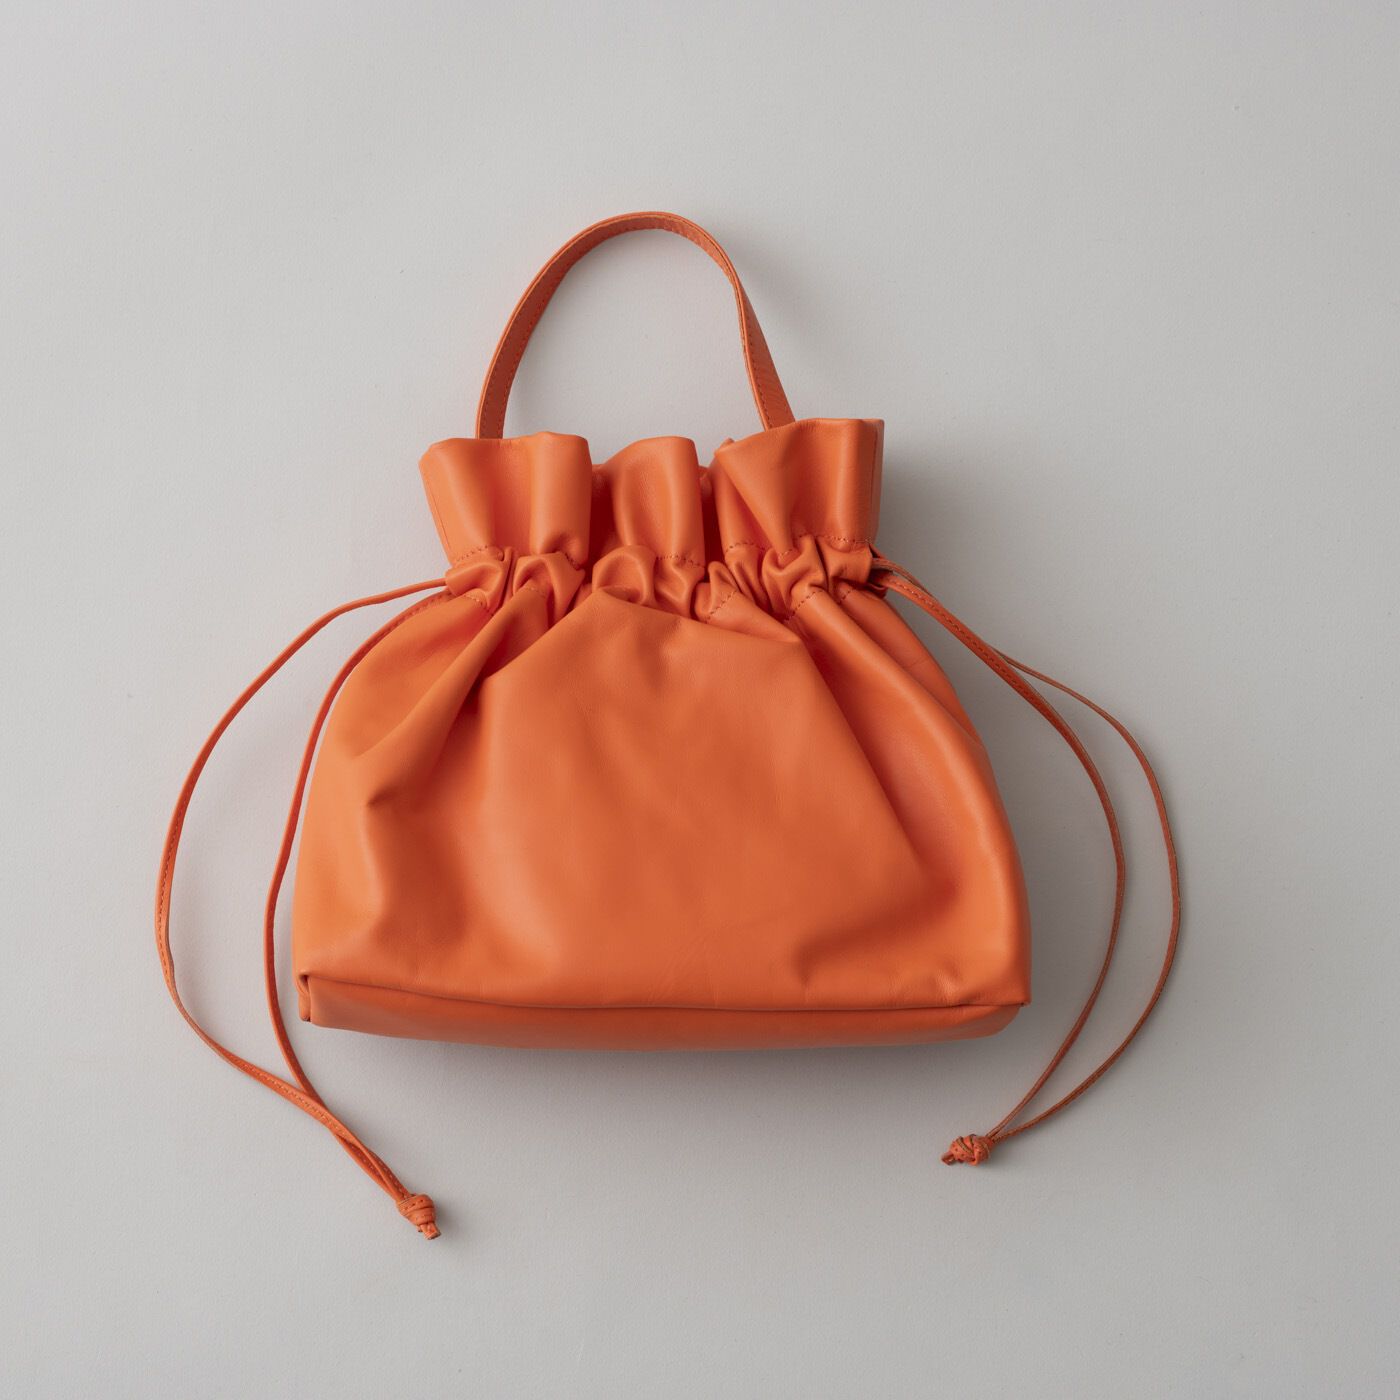 ＆Stories|プランナーMOEが作った　職人本革のキャンディーバッグ〈ネーブルオレンジ〉|しなやかで丈夫な本革を使い、丁寧な縫製を施すことで、大人に似合うバッグに仕上げました。